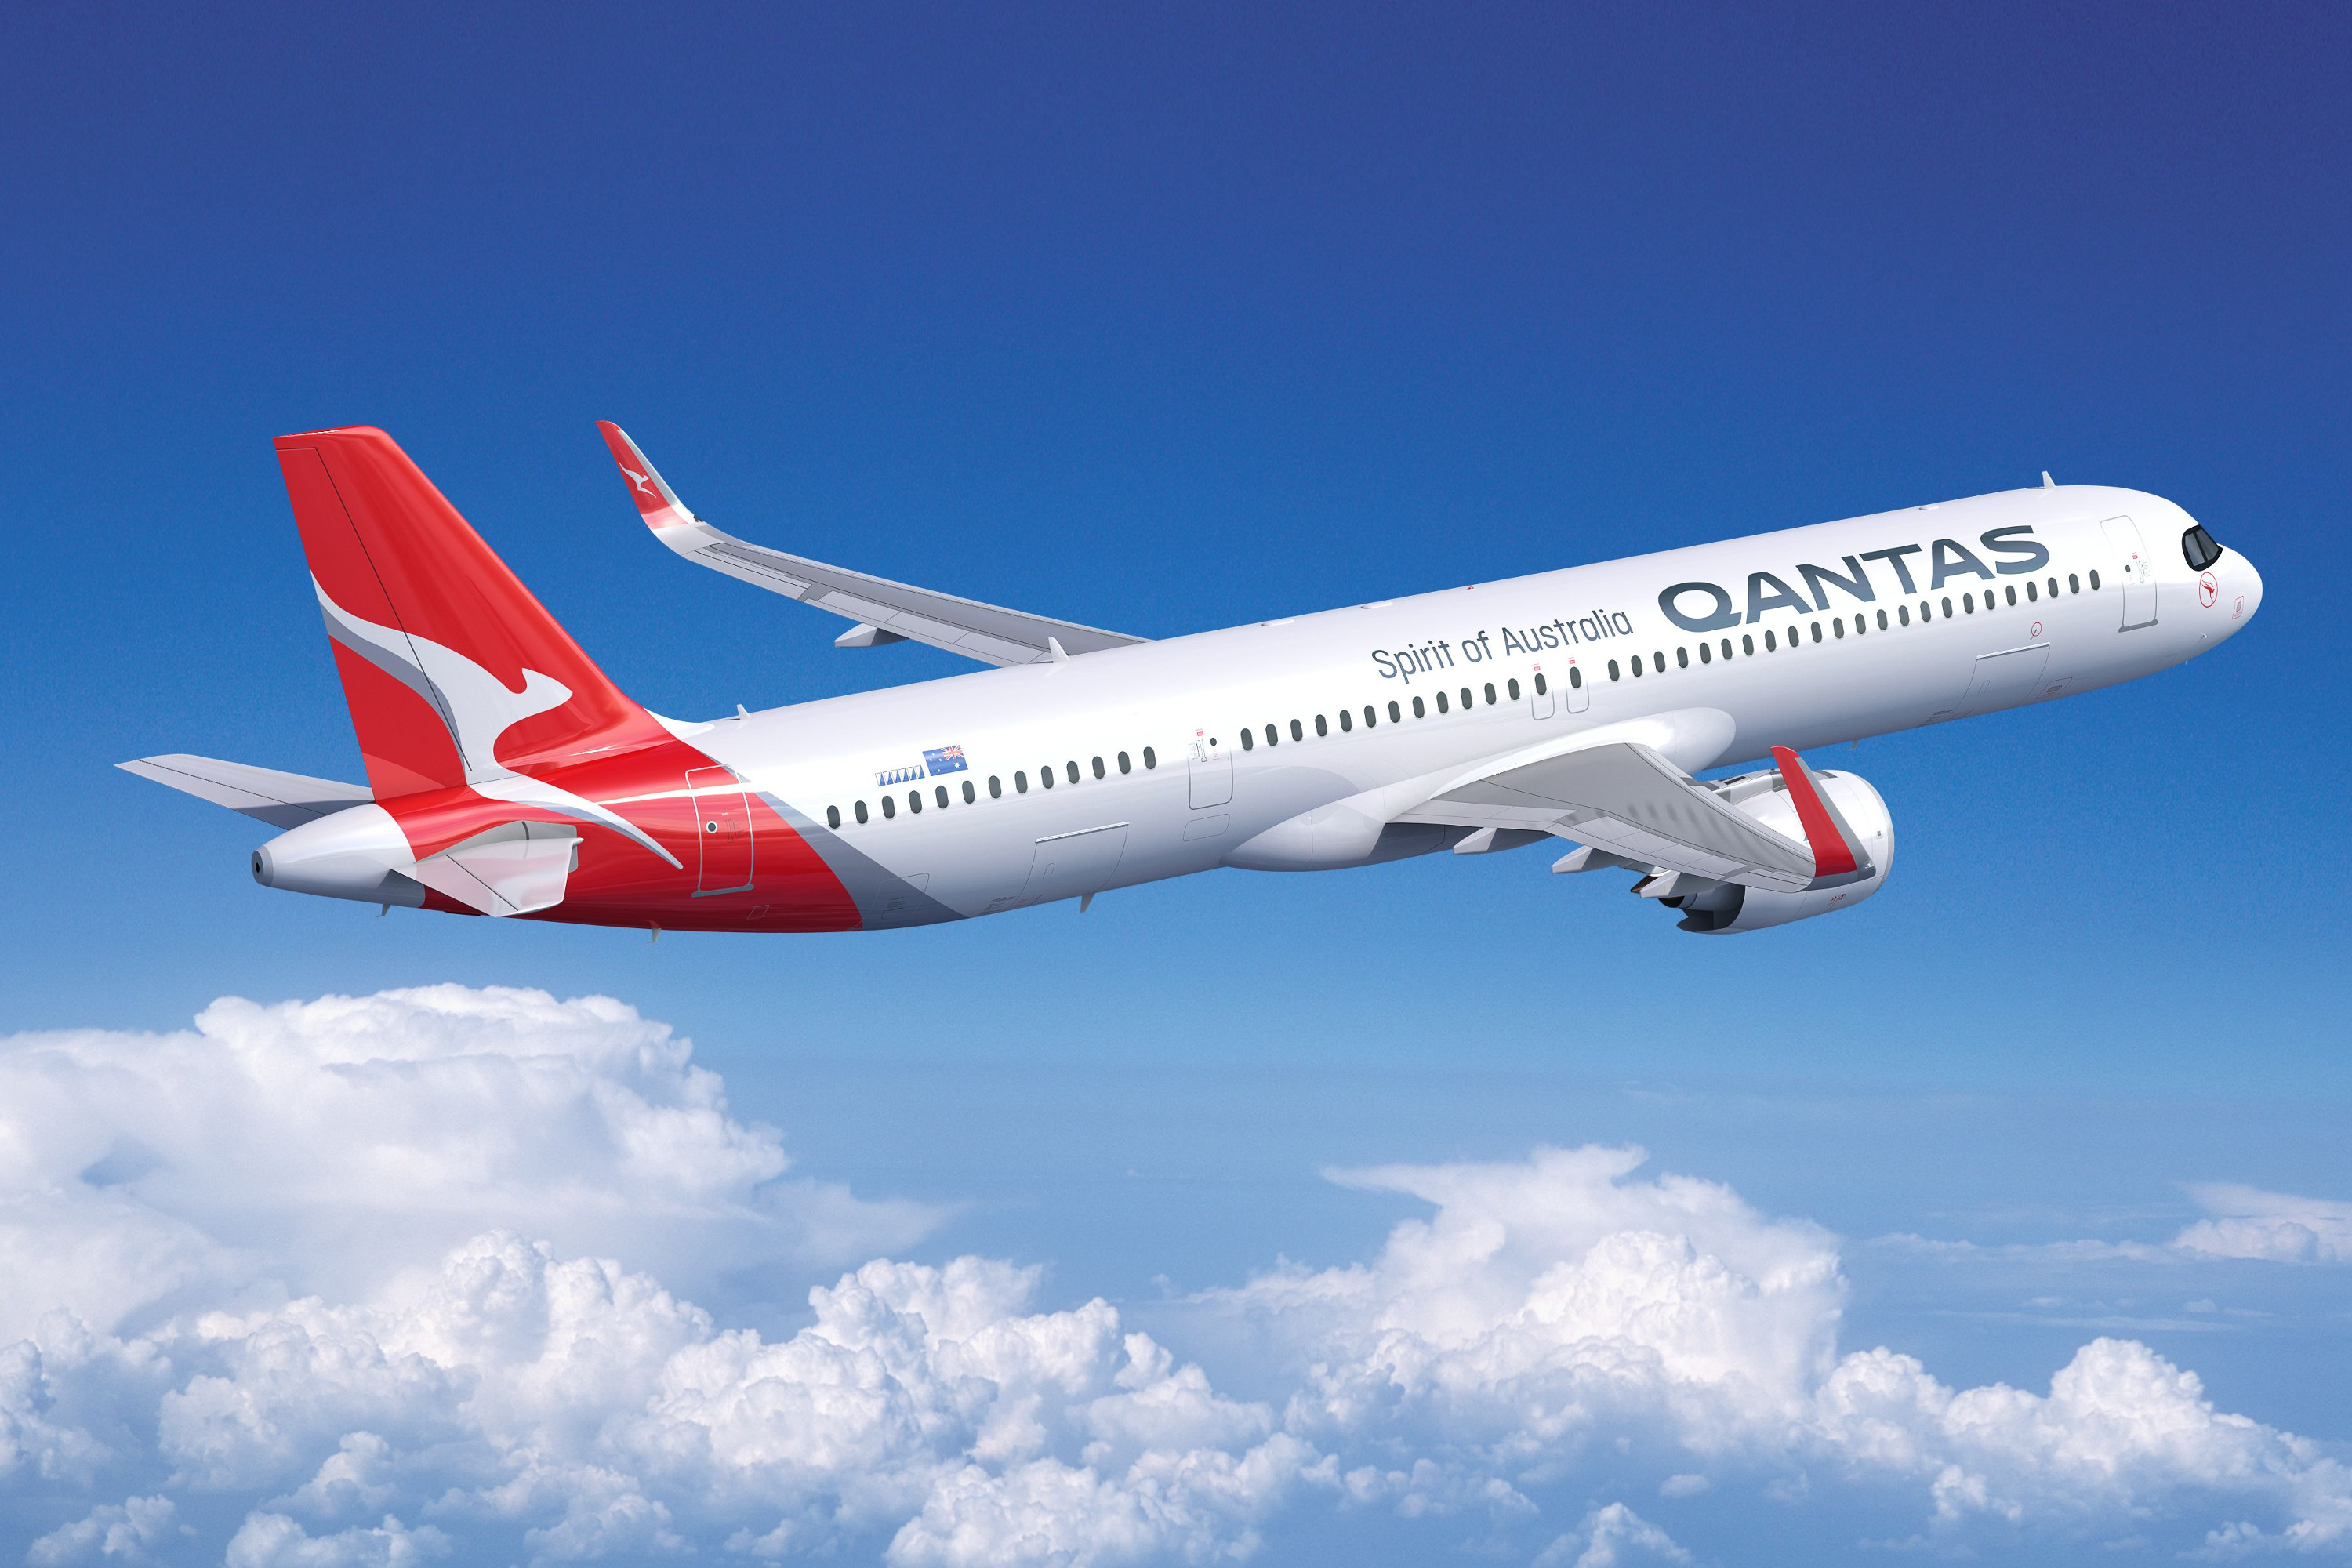 La compagnie australienne Qantas réduit ses vols internationaux de 90%